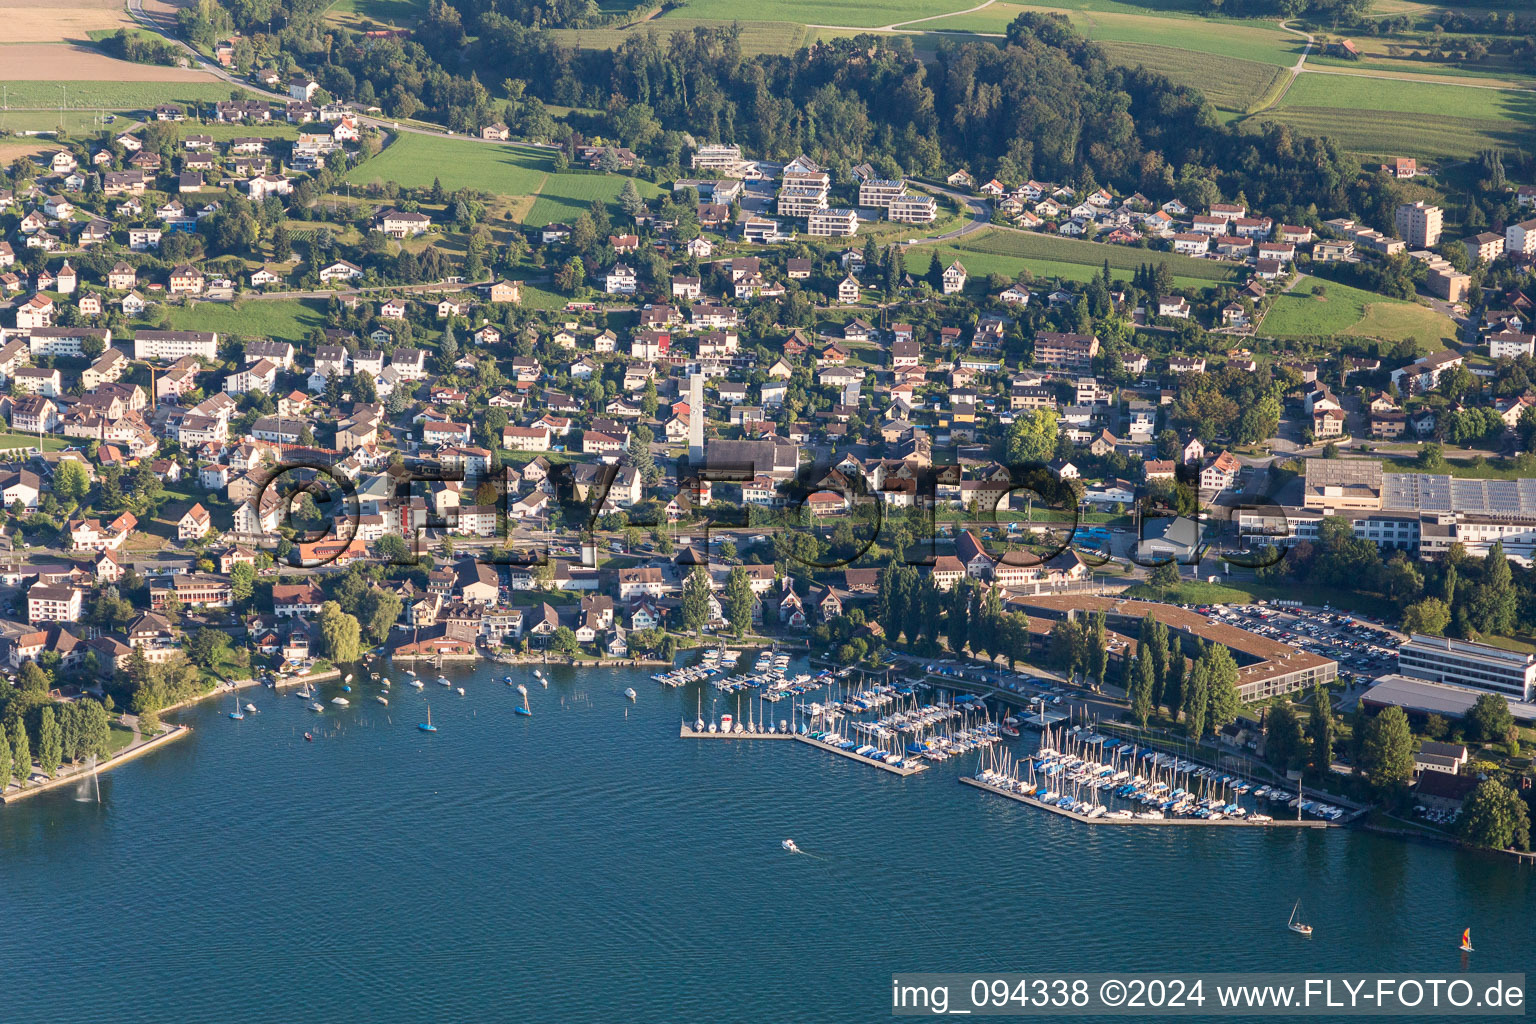 Yachthafen mit Sportboot- Anlegestellen und Bootsliegeplätzen am Uferbereich des Bodensee in Steckborn im Kanton Thurgau, Schweiz